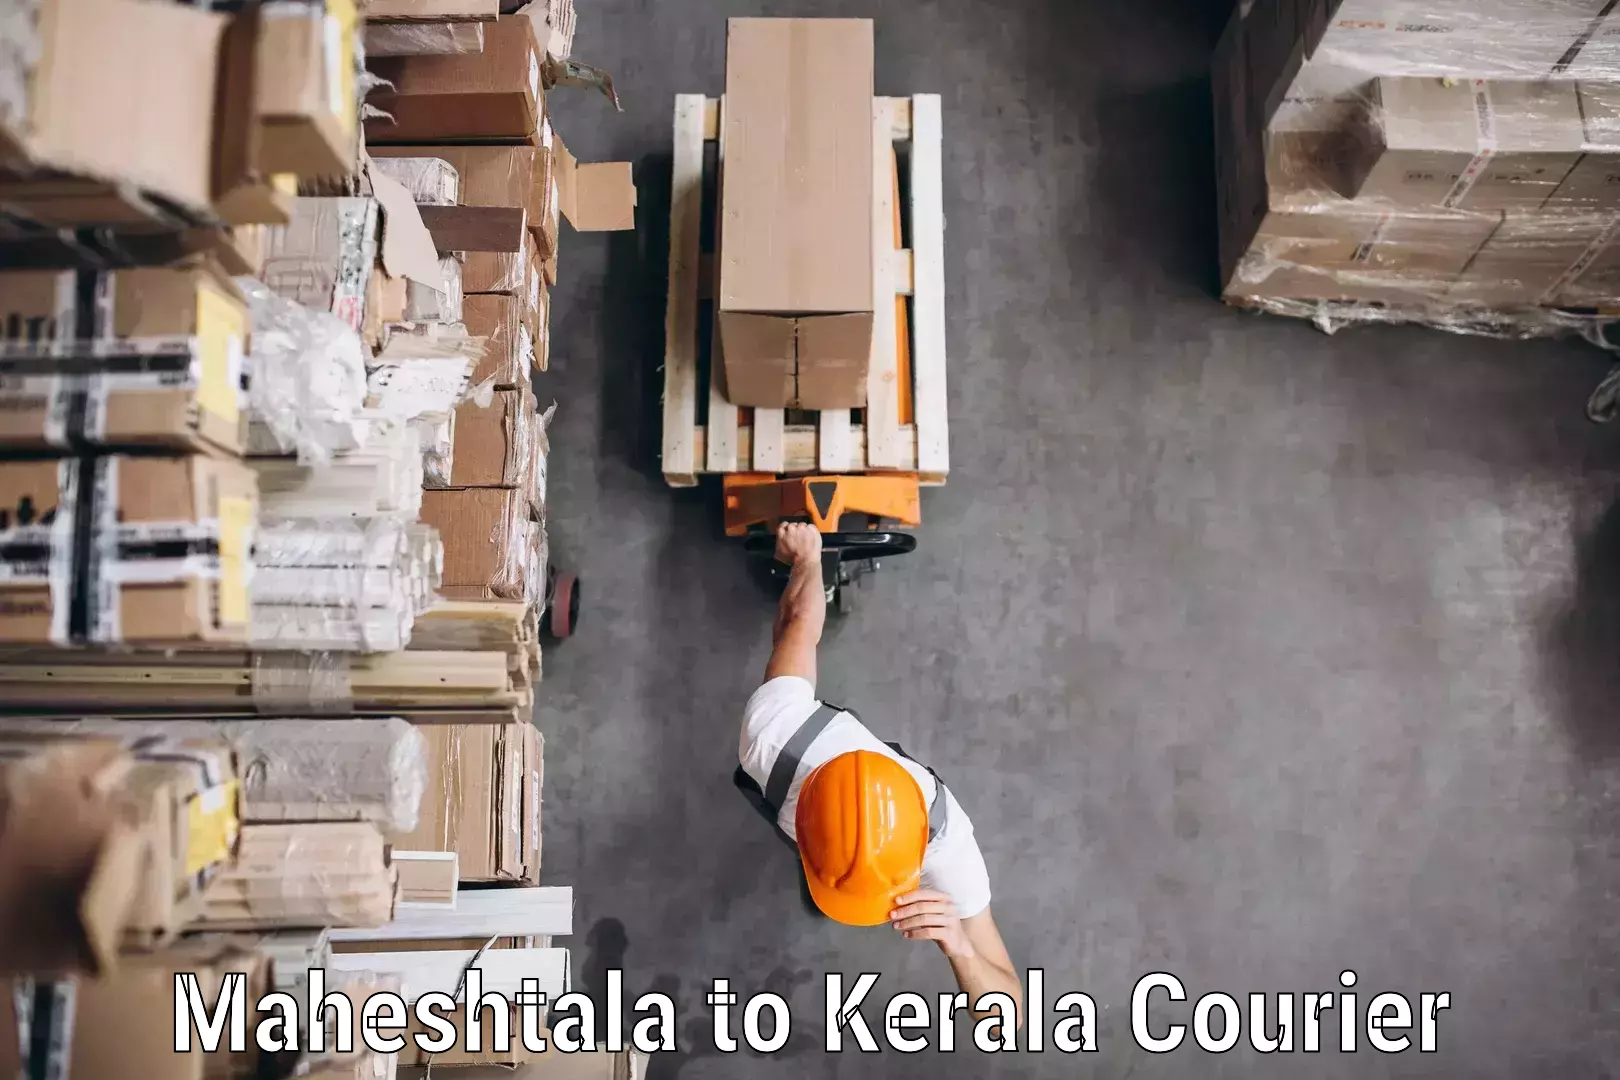 Cargo courier service Maheshtala to Thiruvananthapuram